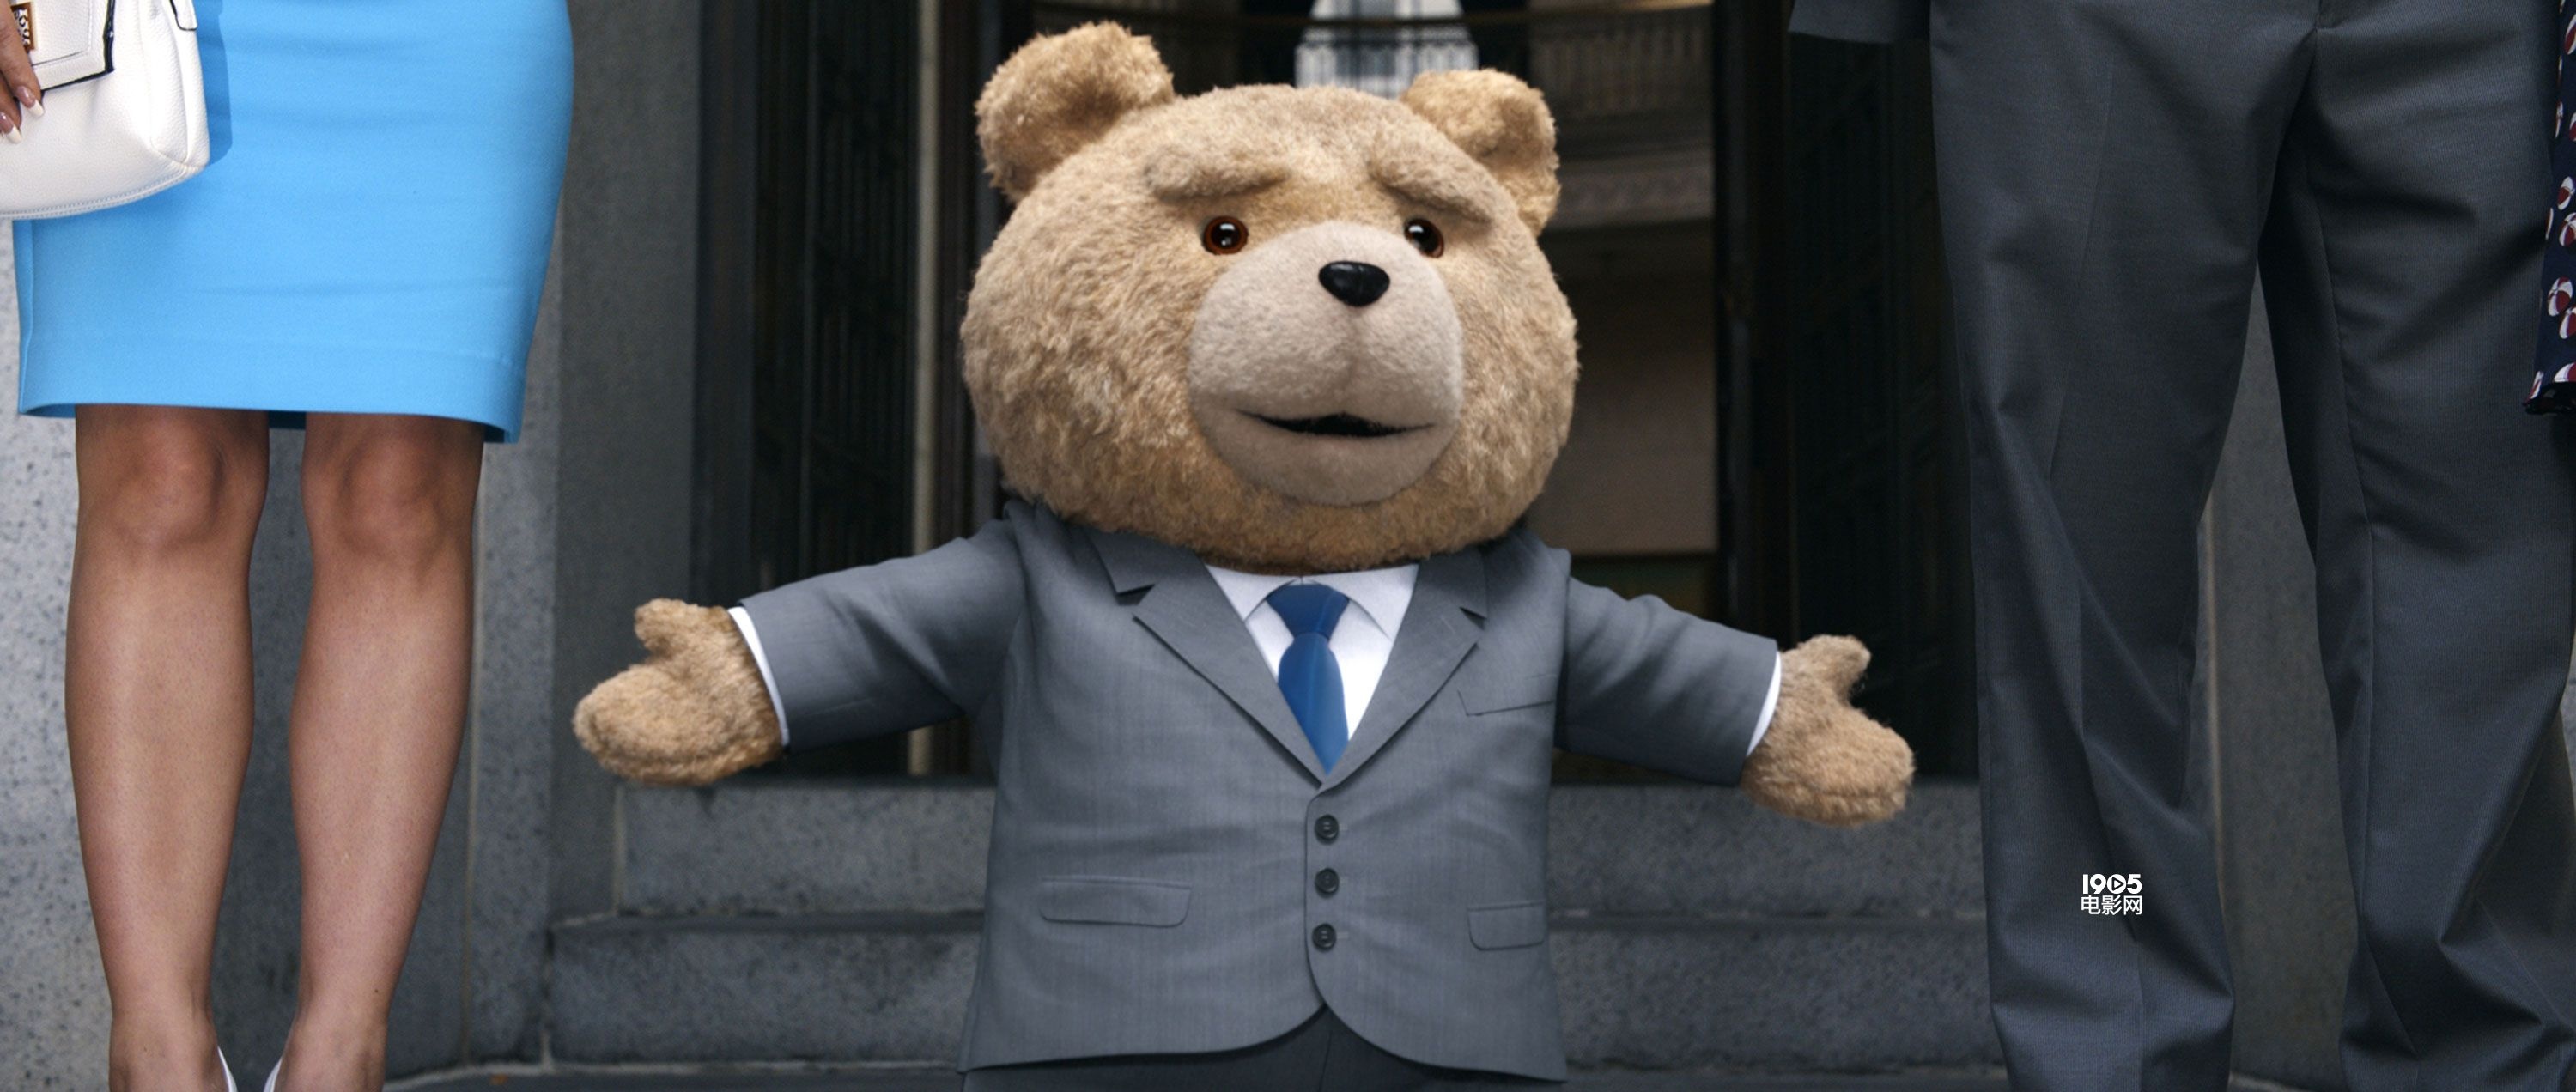 《泰迪熊2》曝光新剧照 呆萌泰迪熊陪伴沃尔伯格